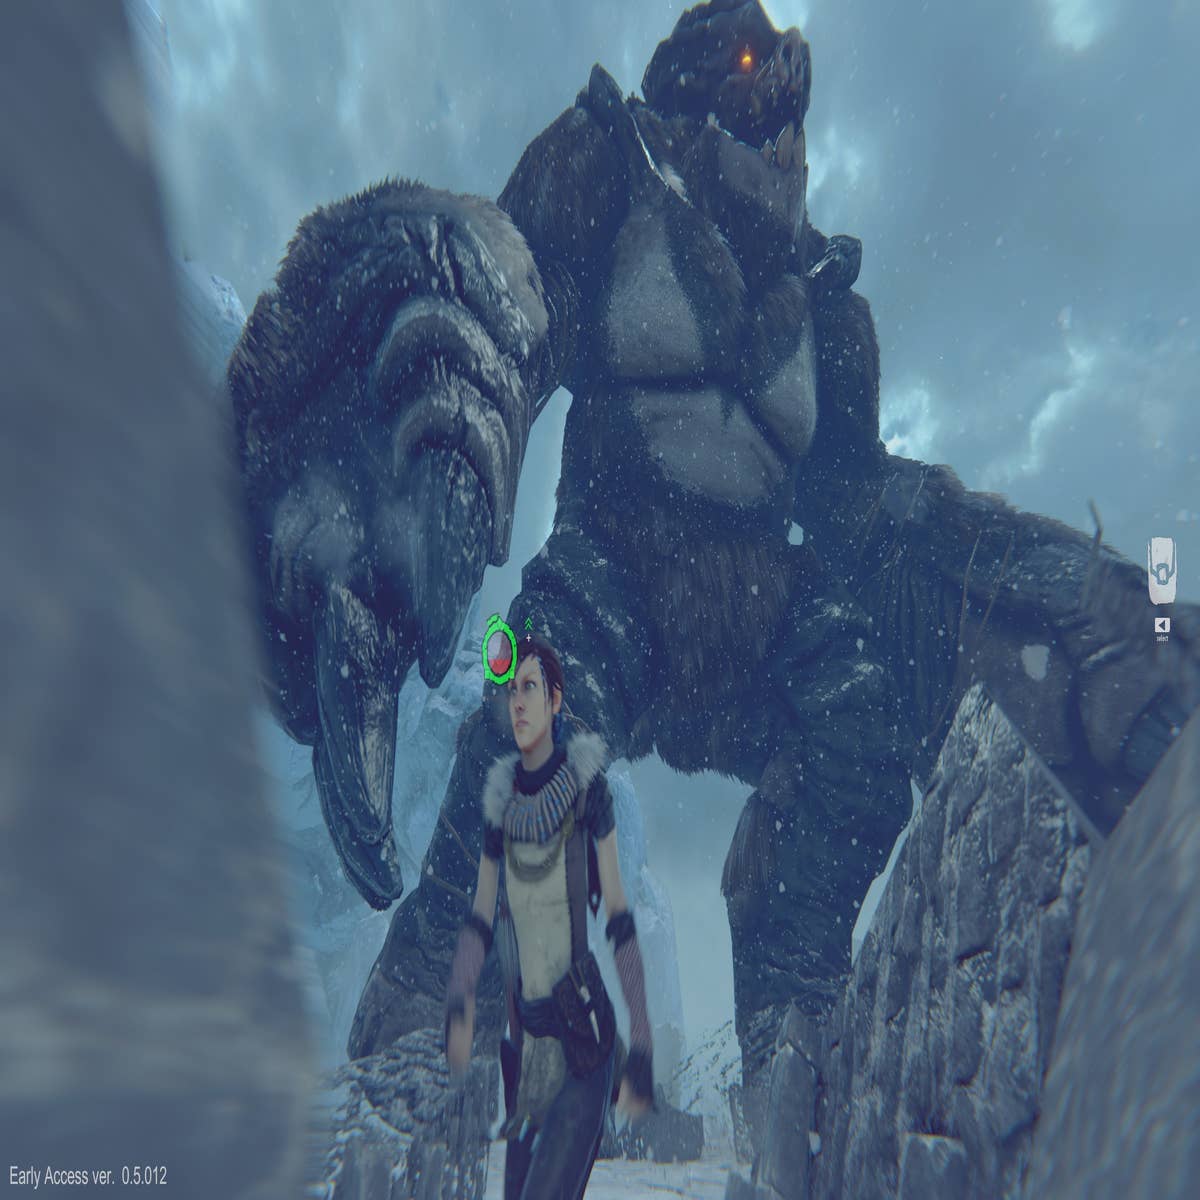 Prey for the Gods promete ser o Shadow of the Colossus dos PC gamers,  confira o trailer - Arkade